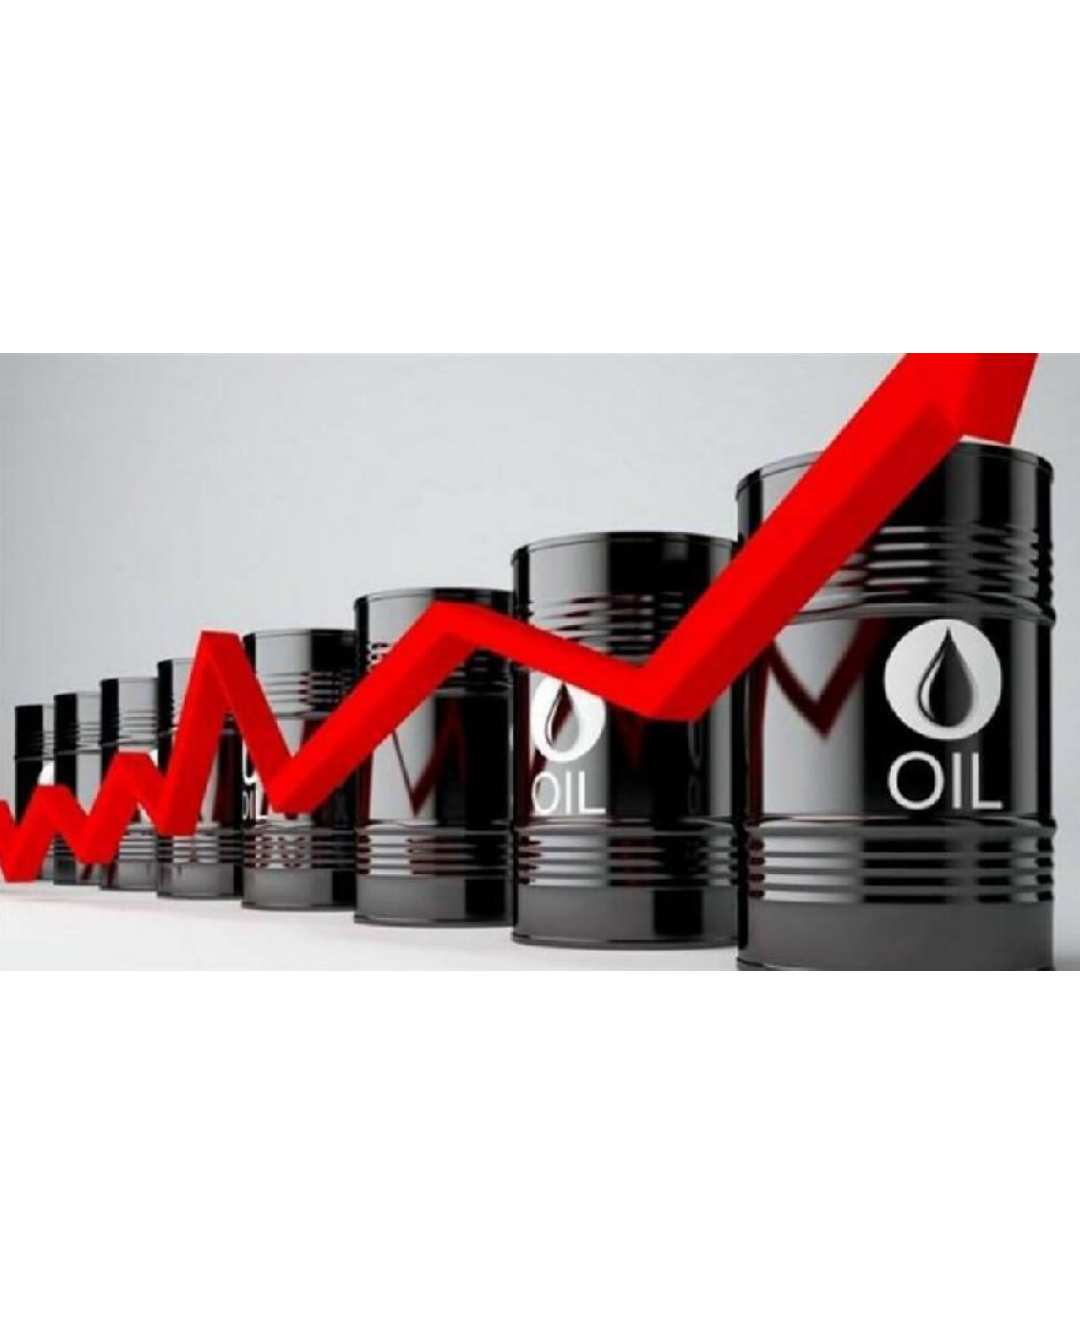 النفط الكويتي يواصل الإرتفاع ليصل 115.92 دولار للبرميل الواحد